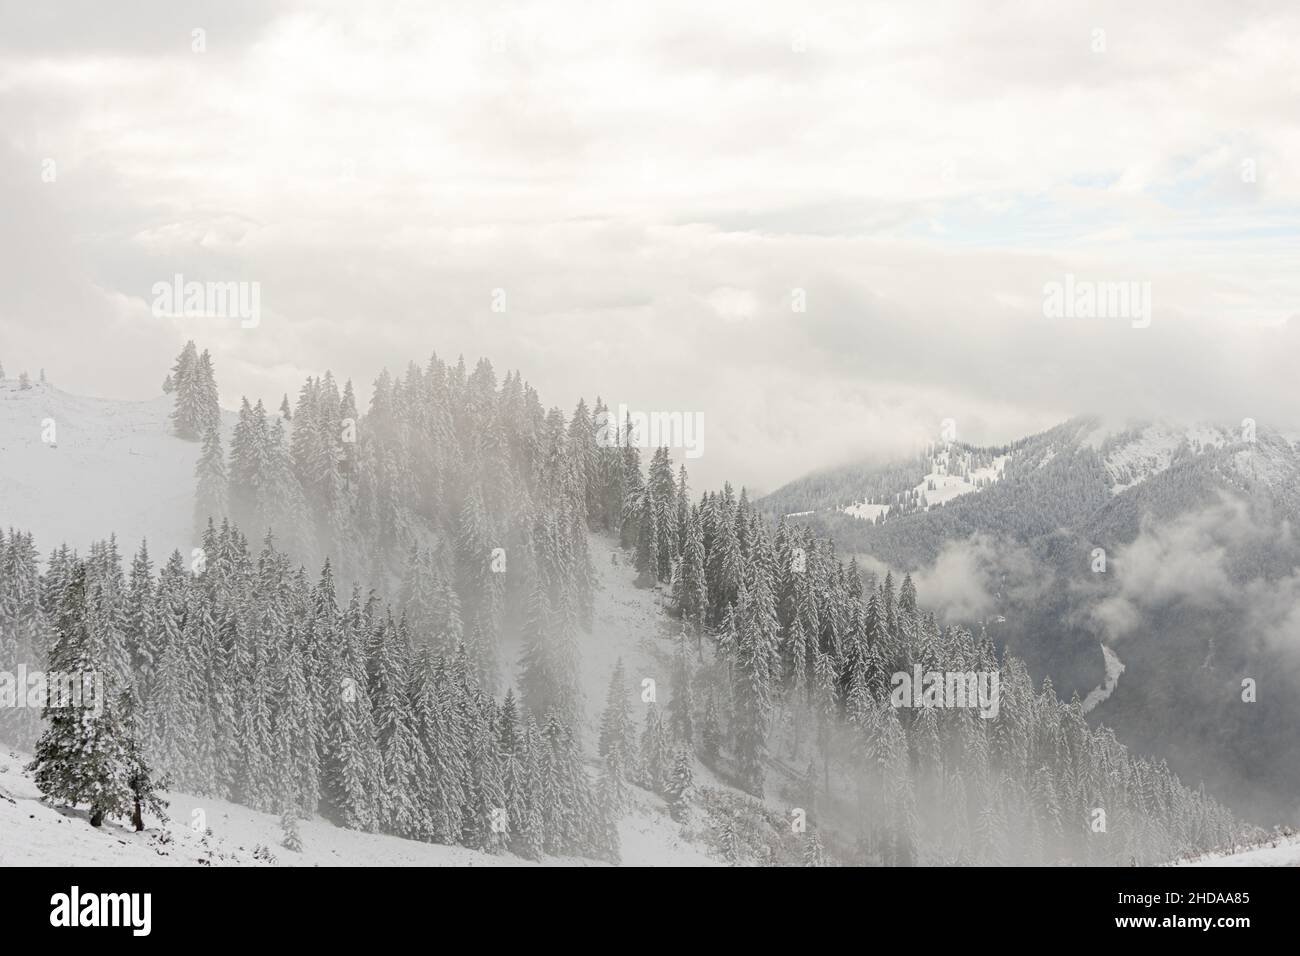 Vue imprenable sur les sapins enneigés pendant une tempête de neige Banque D'Images